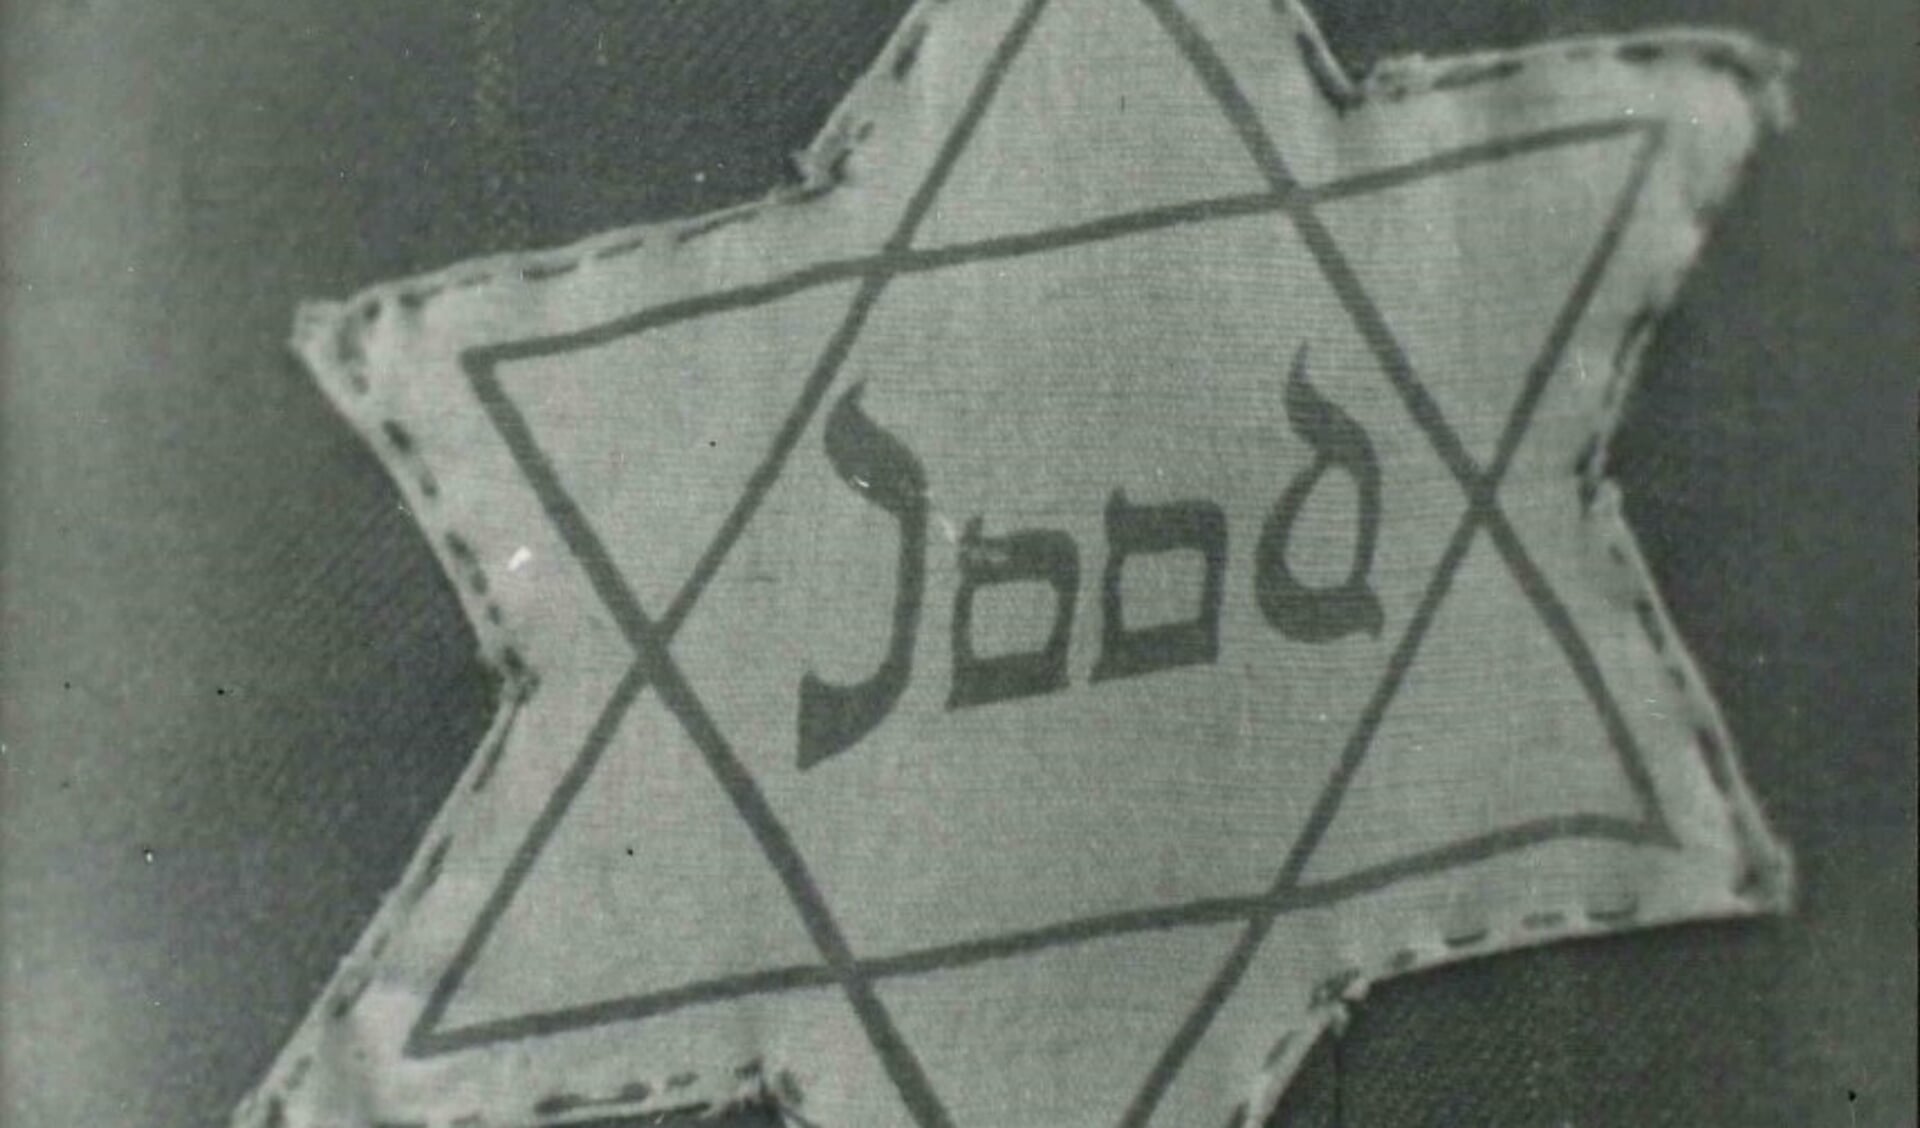 Komende zondag vindt in Den Bosch de herdenking van de holocaust plaats. Hierbij kwamen onder andere zes miljoen Joden om het leven.